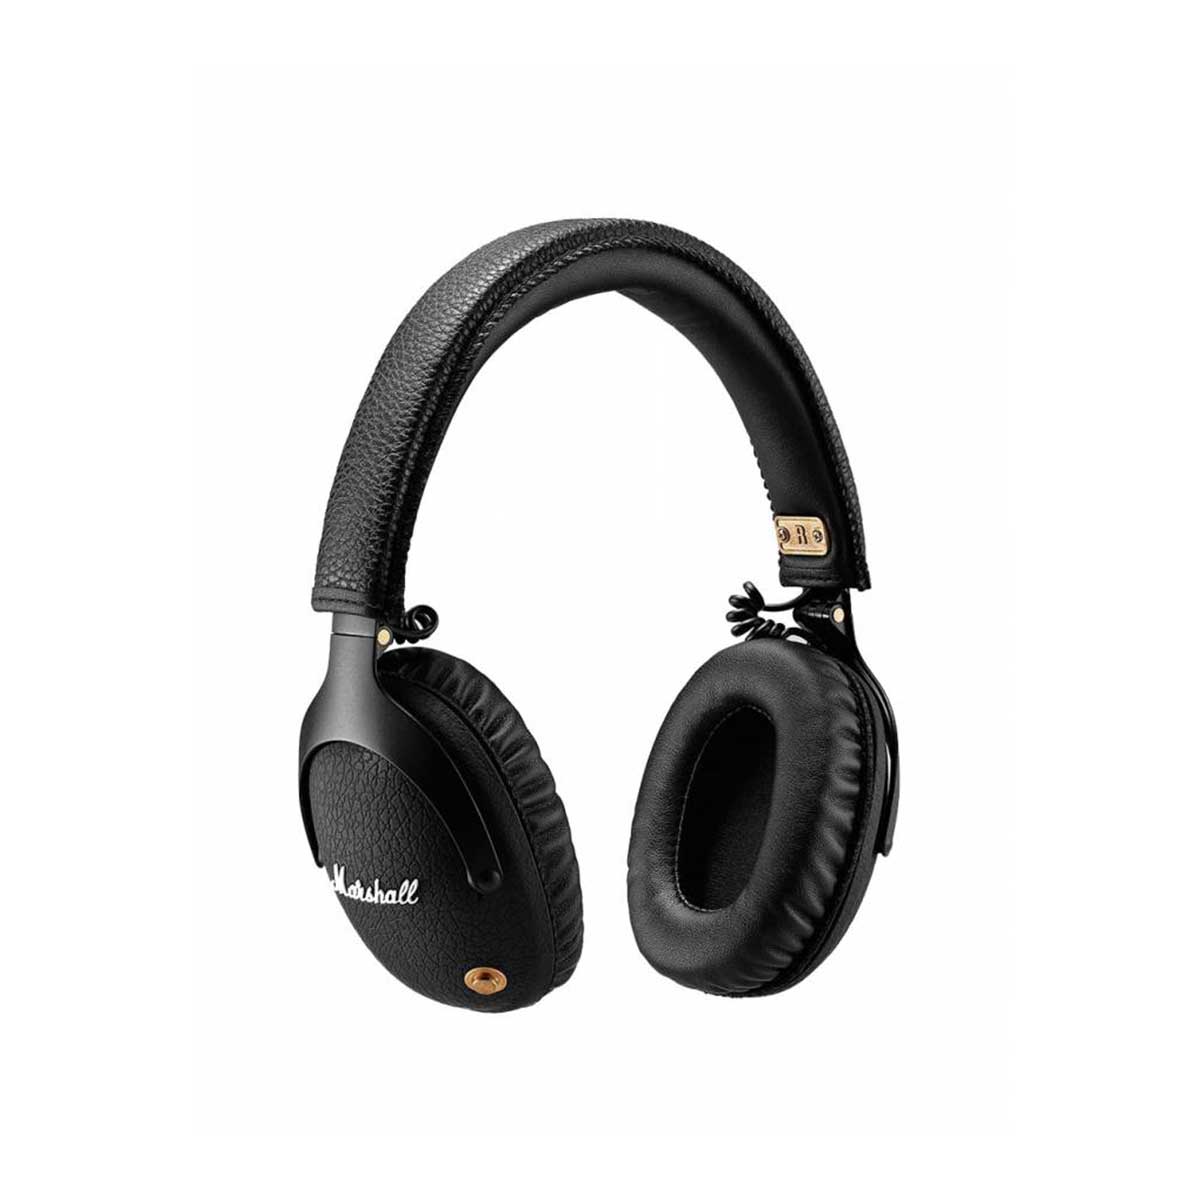 Marshall - Bluetooth On-ear Headphone Black ANC